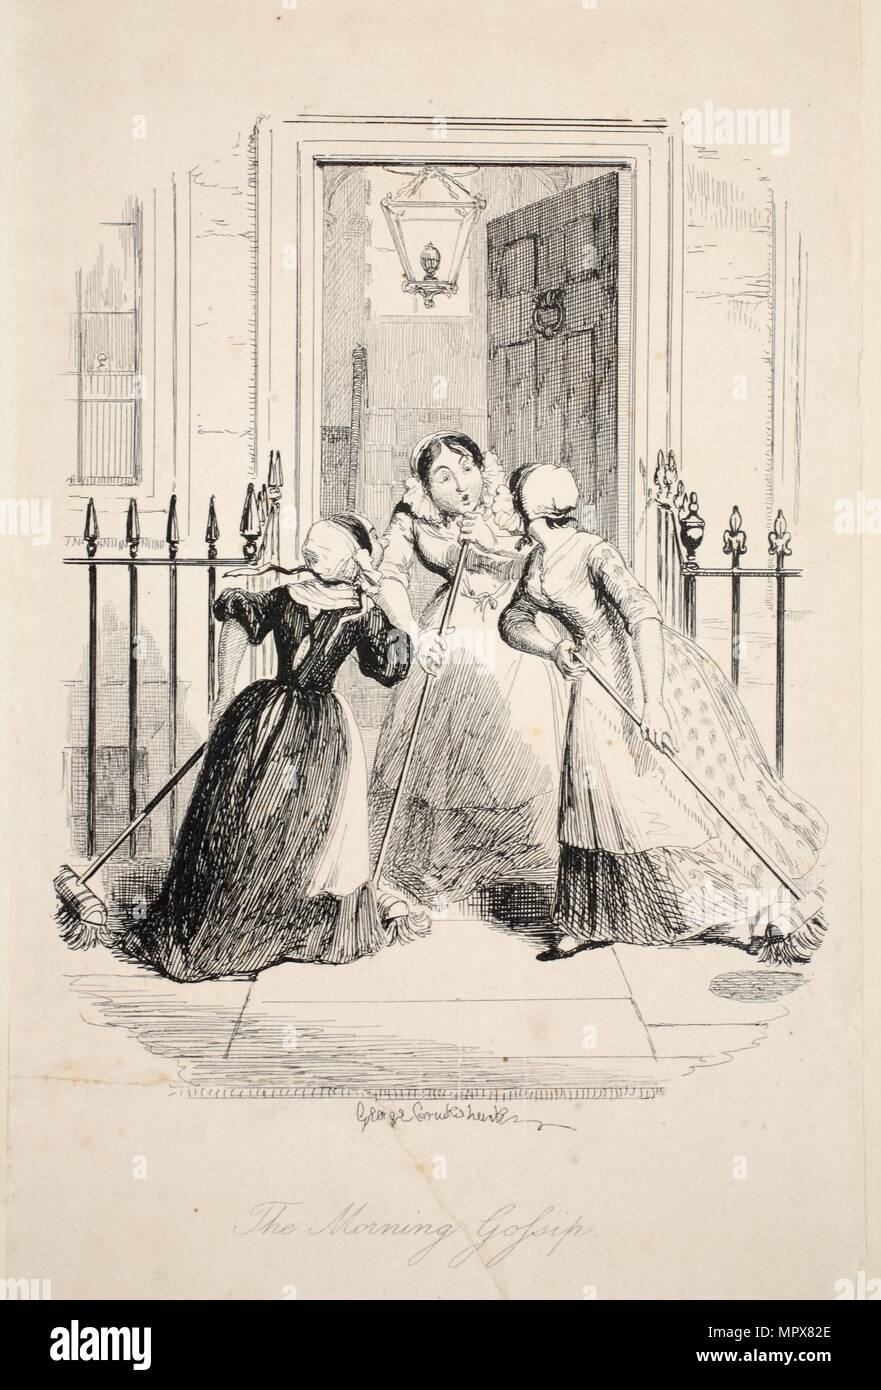 Am Morgen Klatsch, von der größten Plage des Lebens, Pub. 1847 (Gravur) Stockfoto